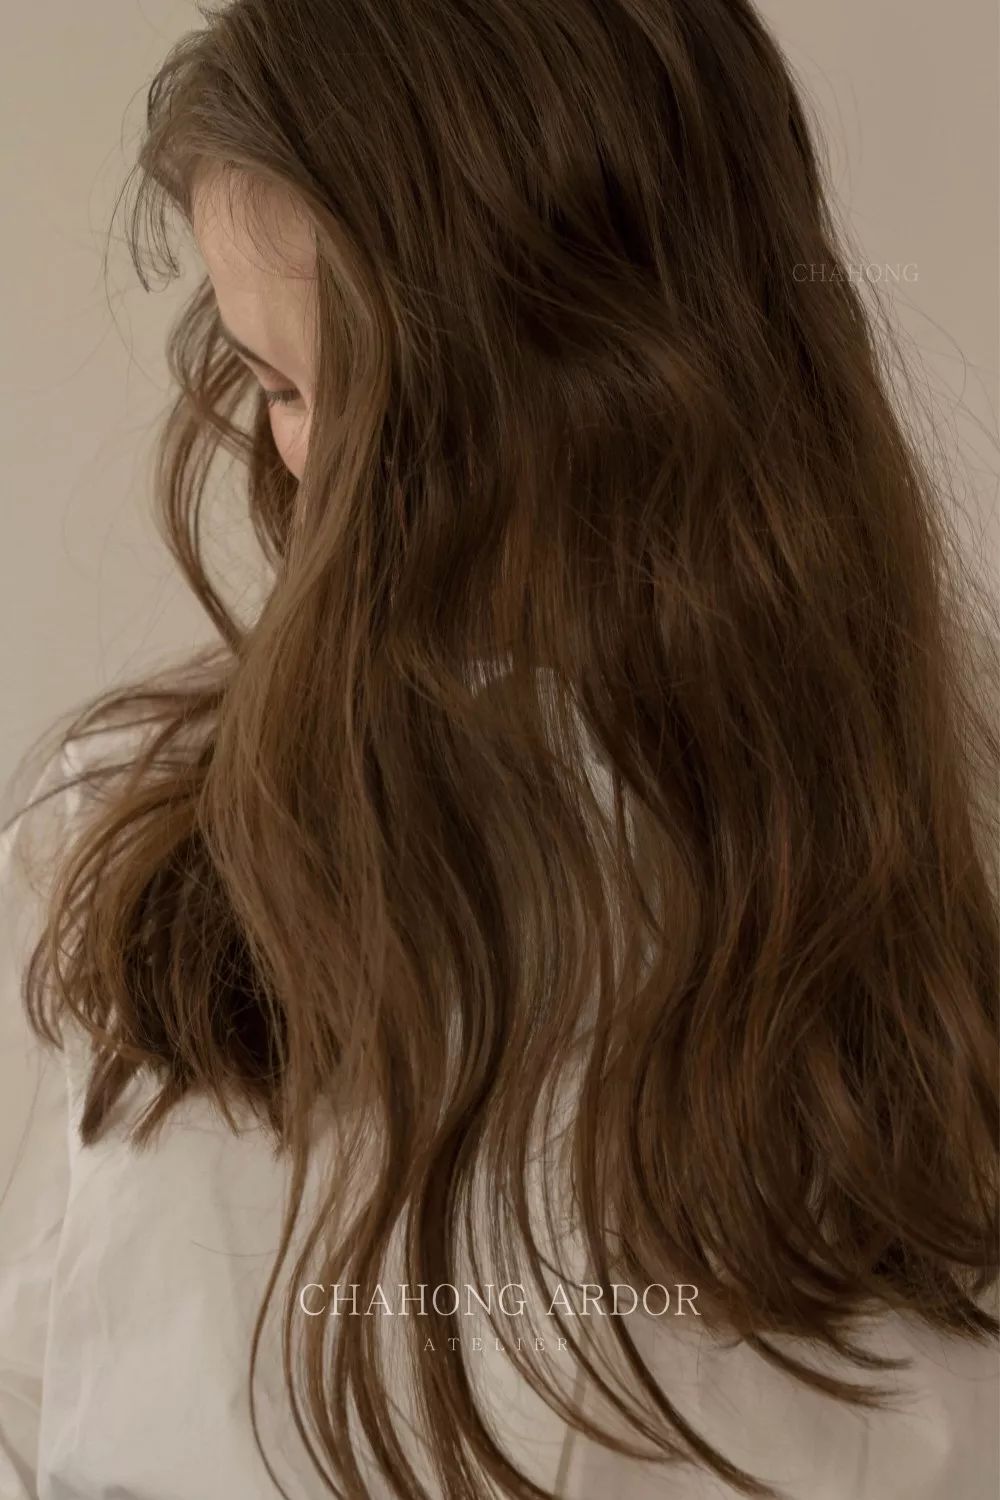 中长发的橄榄褐发色,齐眉刘海搭配慵懒卷▼▼檀棕直发的中长发,即便